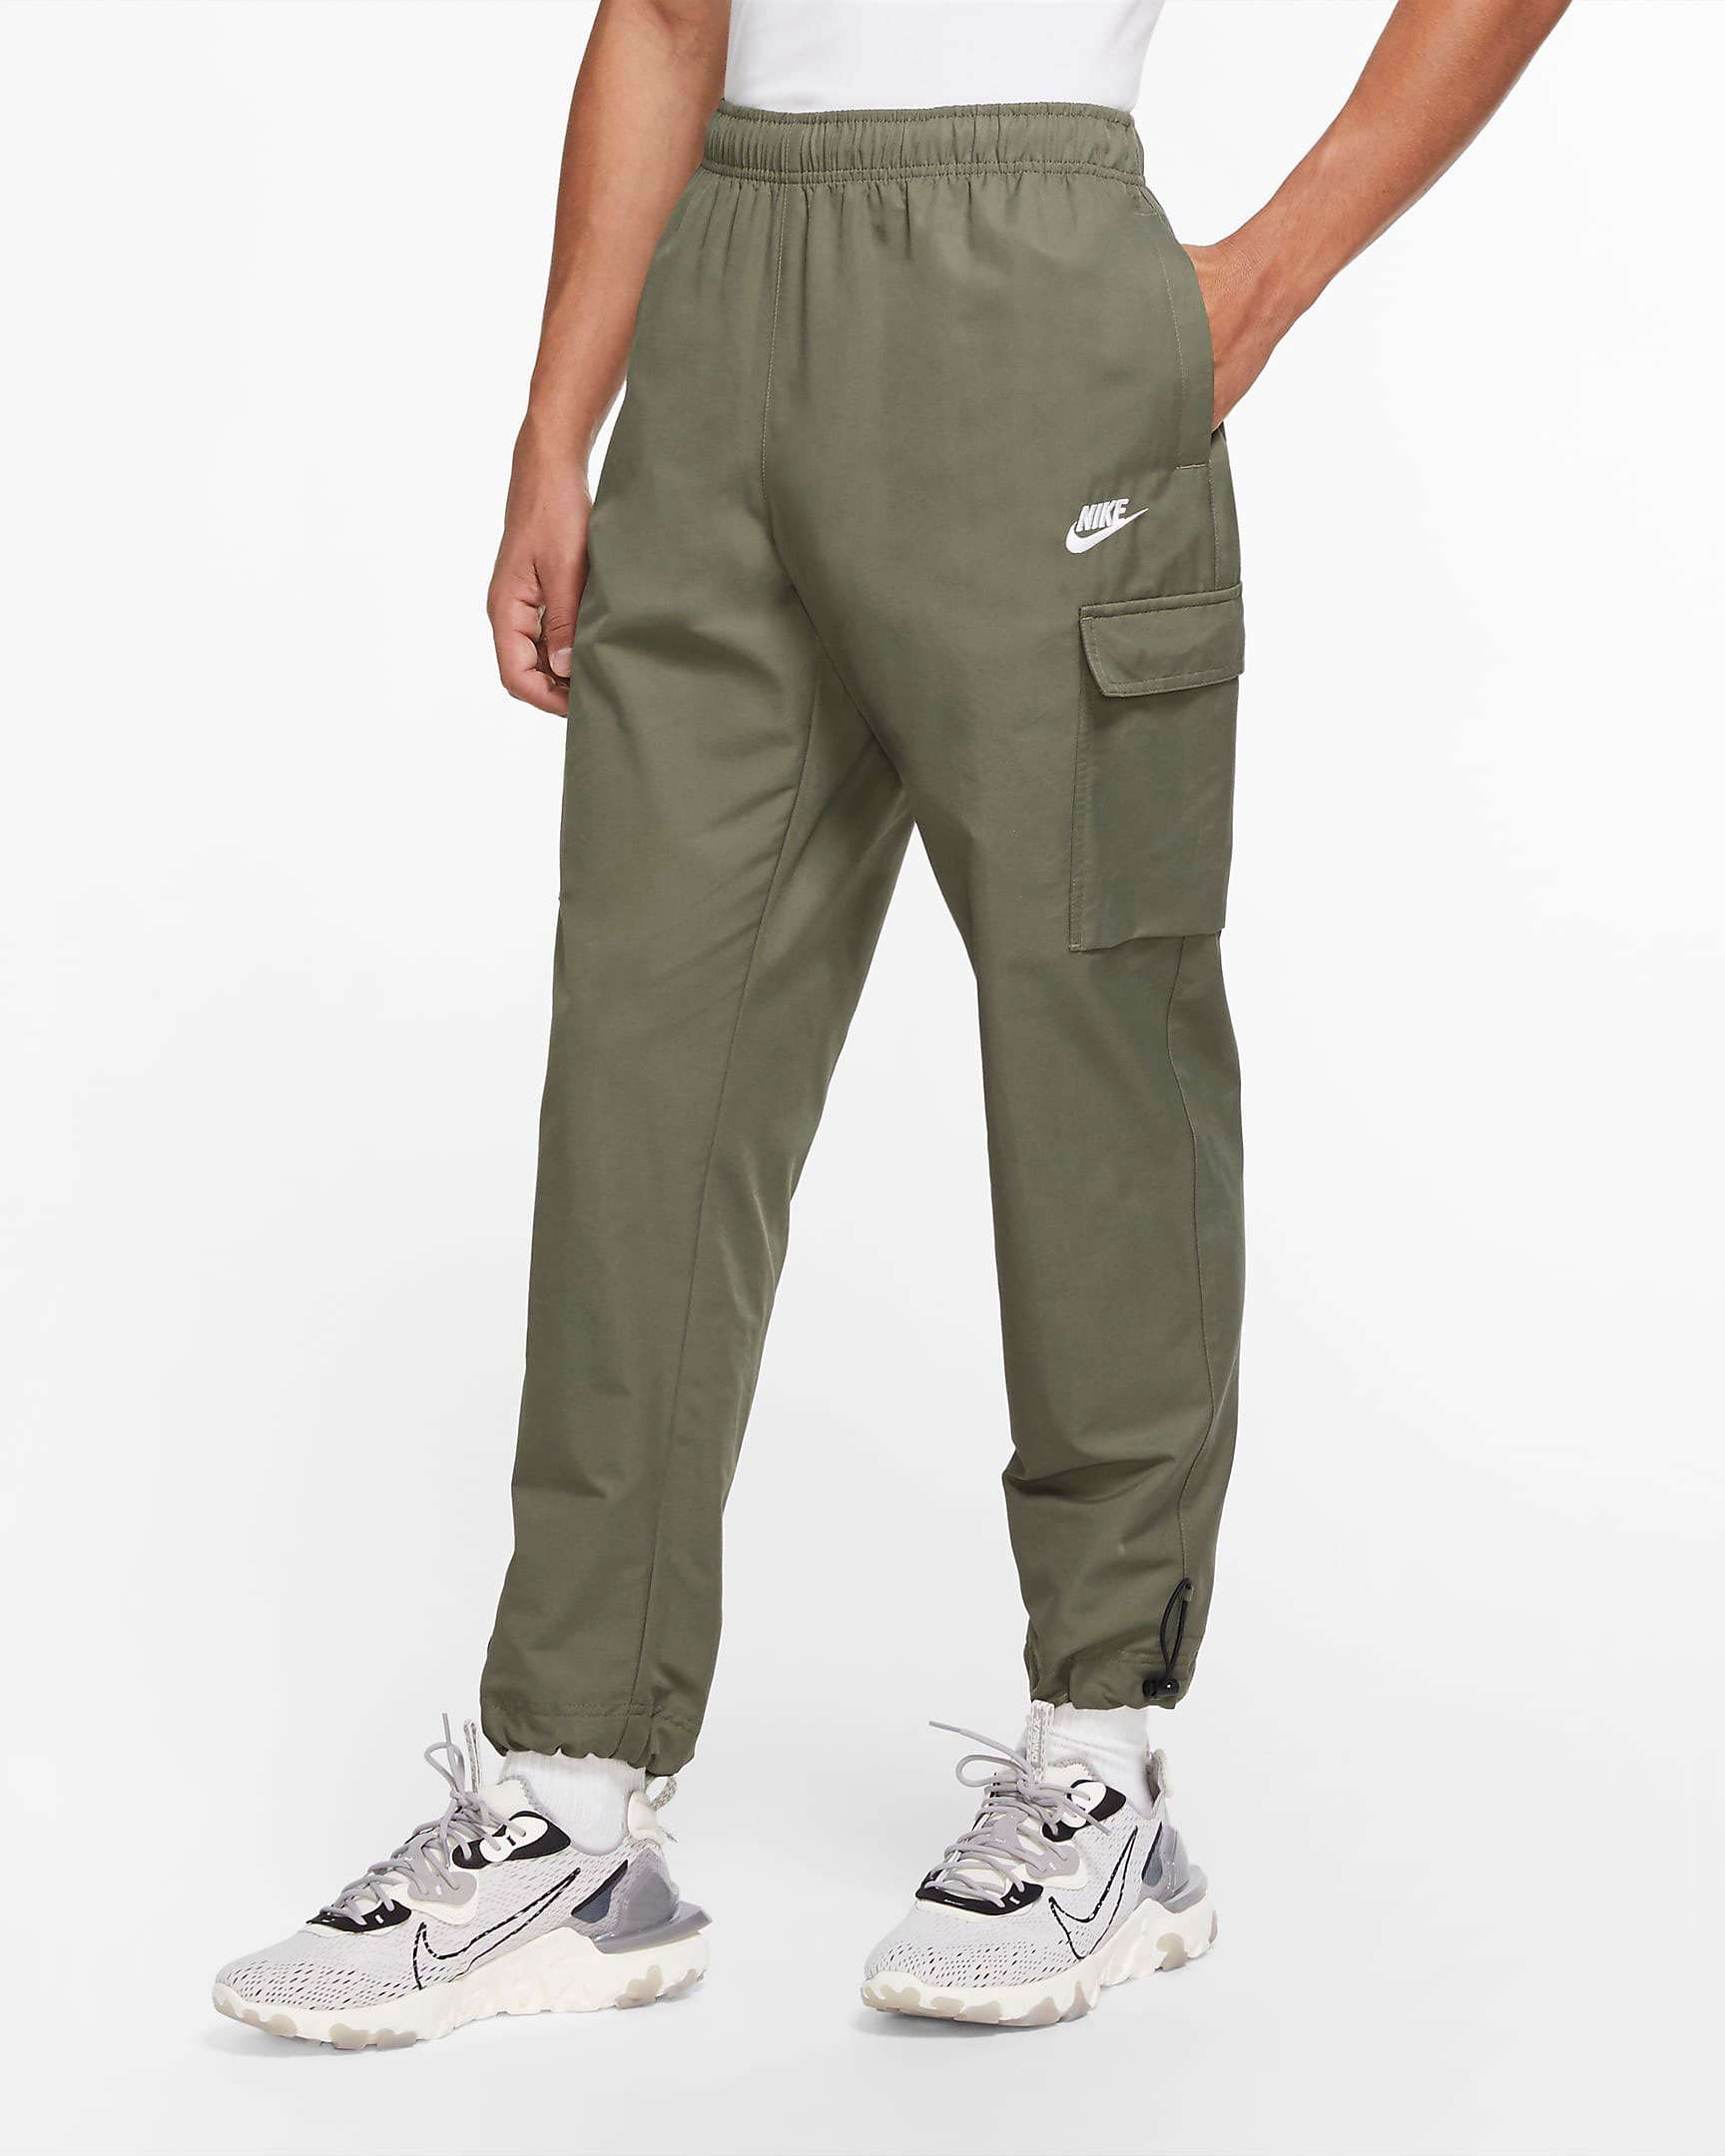 nike-sportswear-woven-pants-twilight-marsh-olive-green